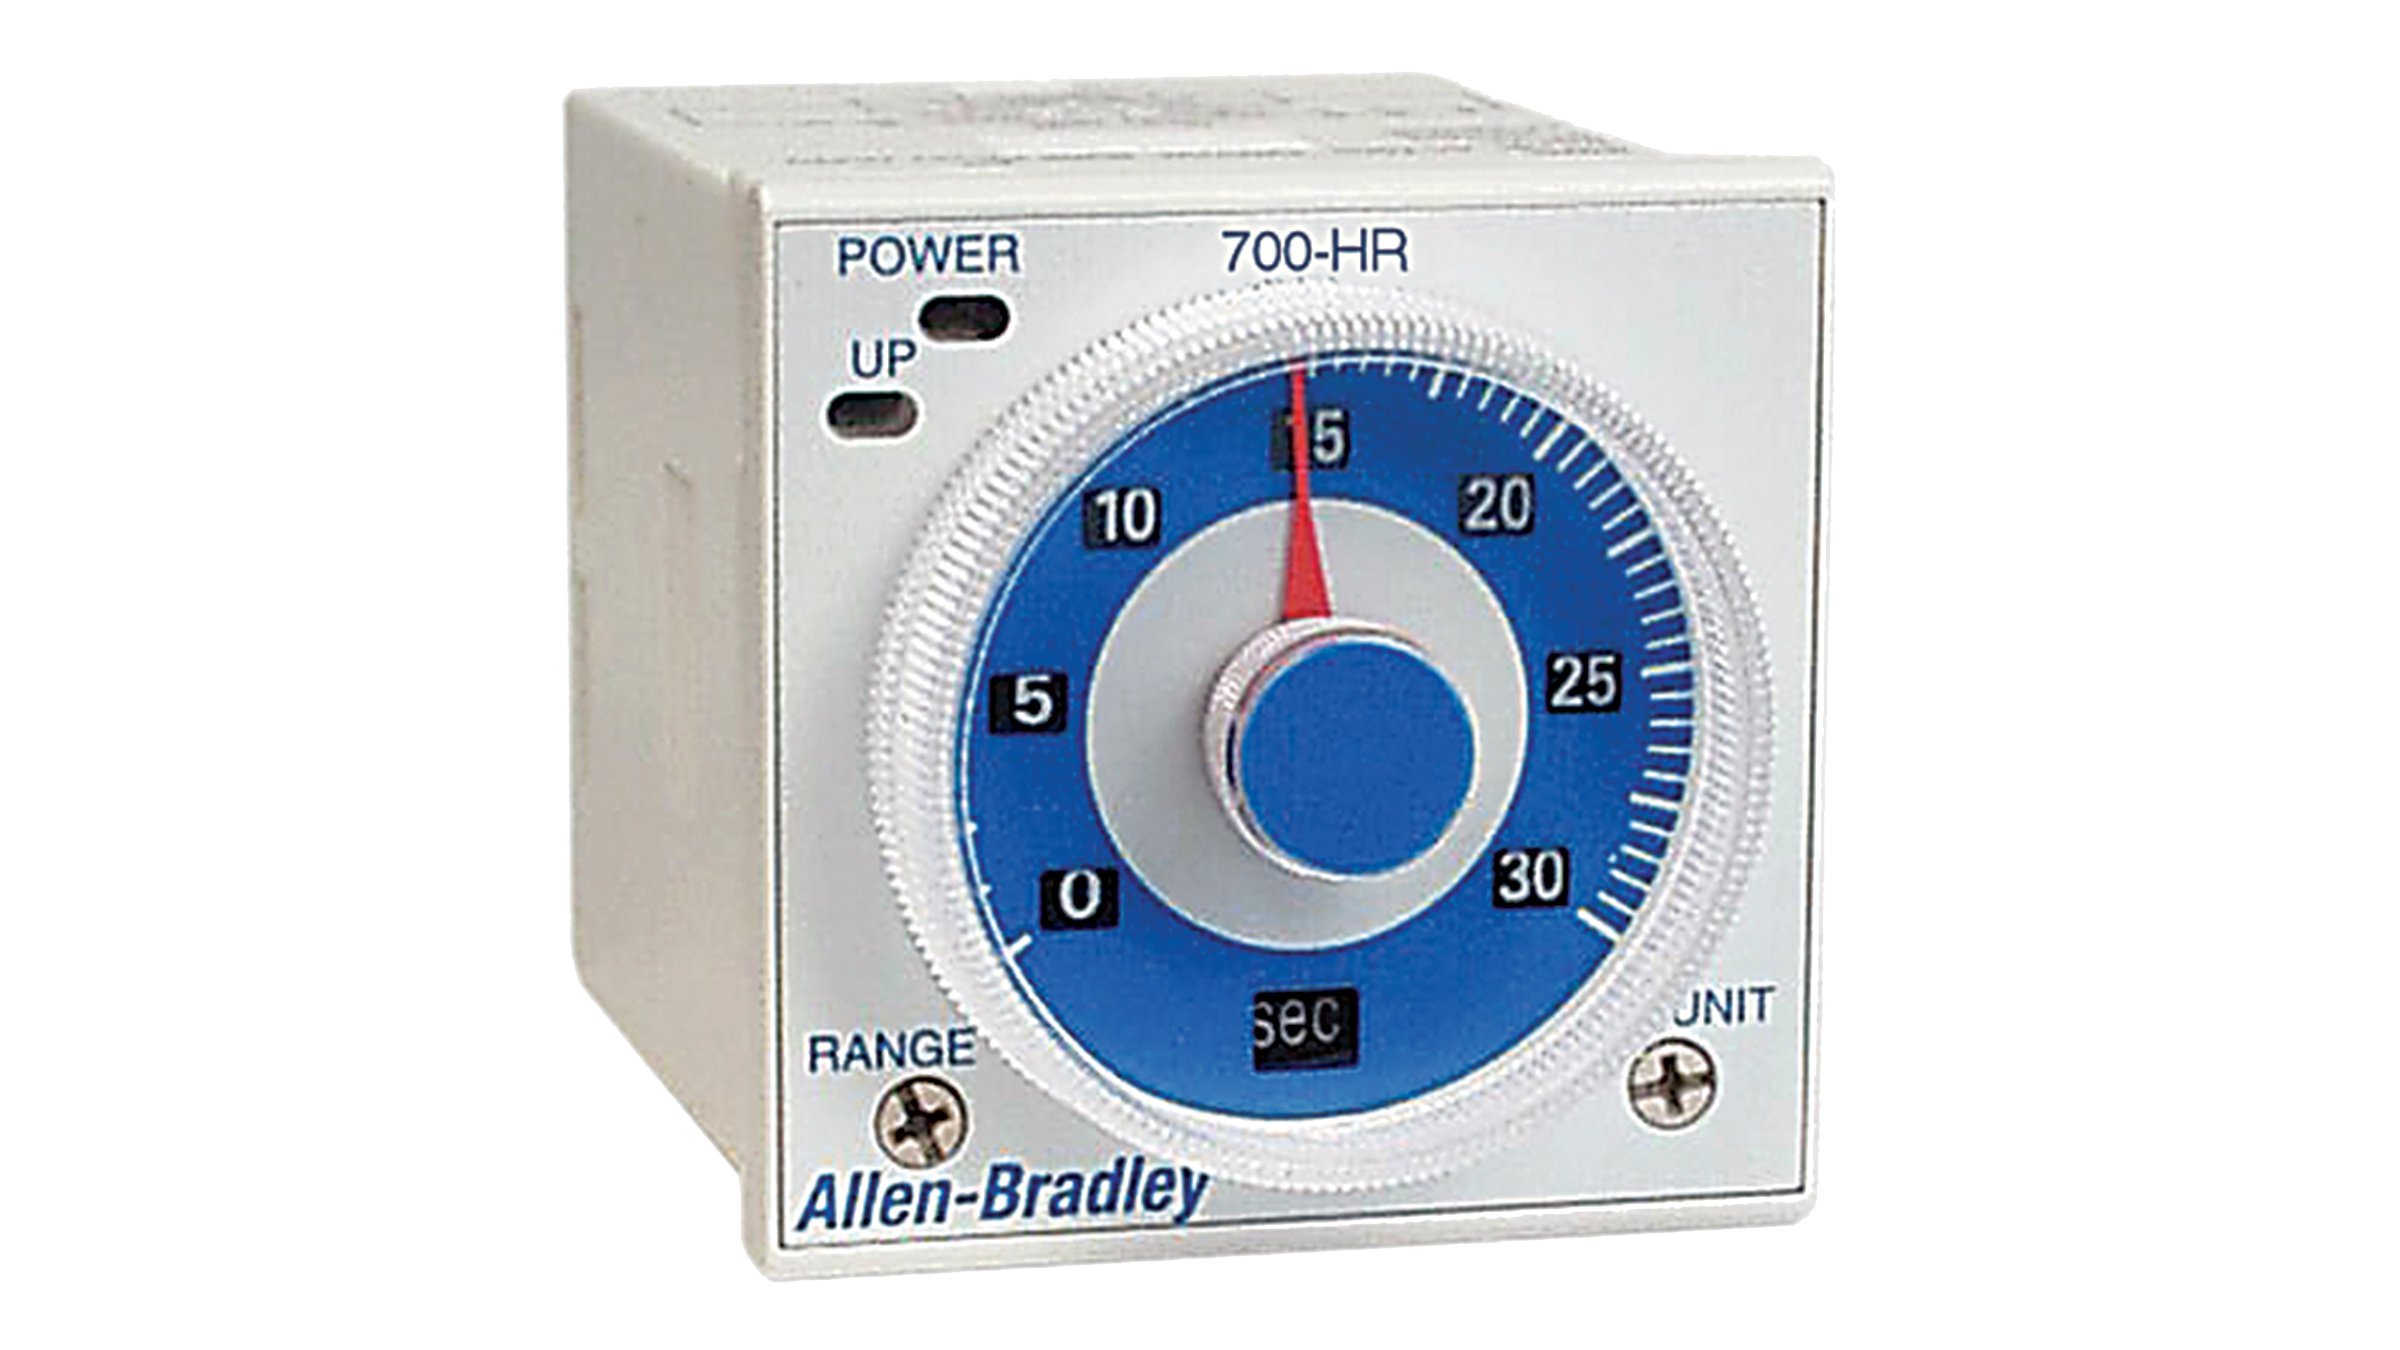 Les relais temporisé à cadran Allen-Bradley, série 700-HR sont des relais de temporisation enfichables montés sur connecteur femelle.